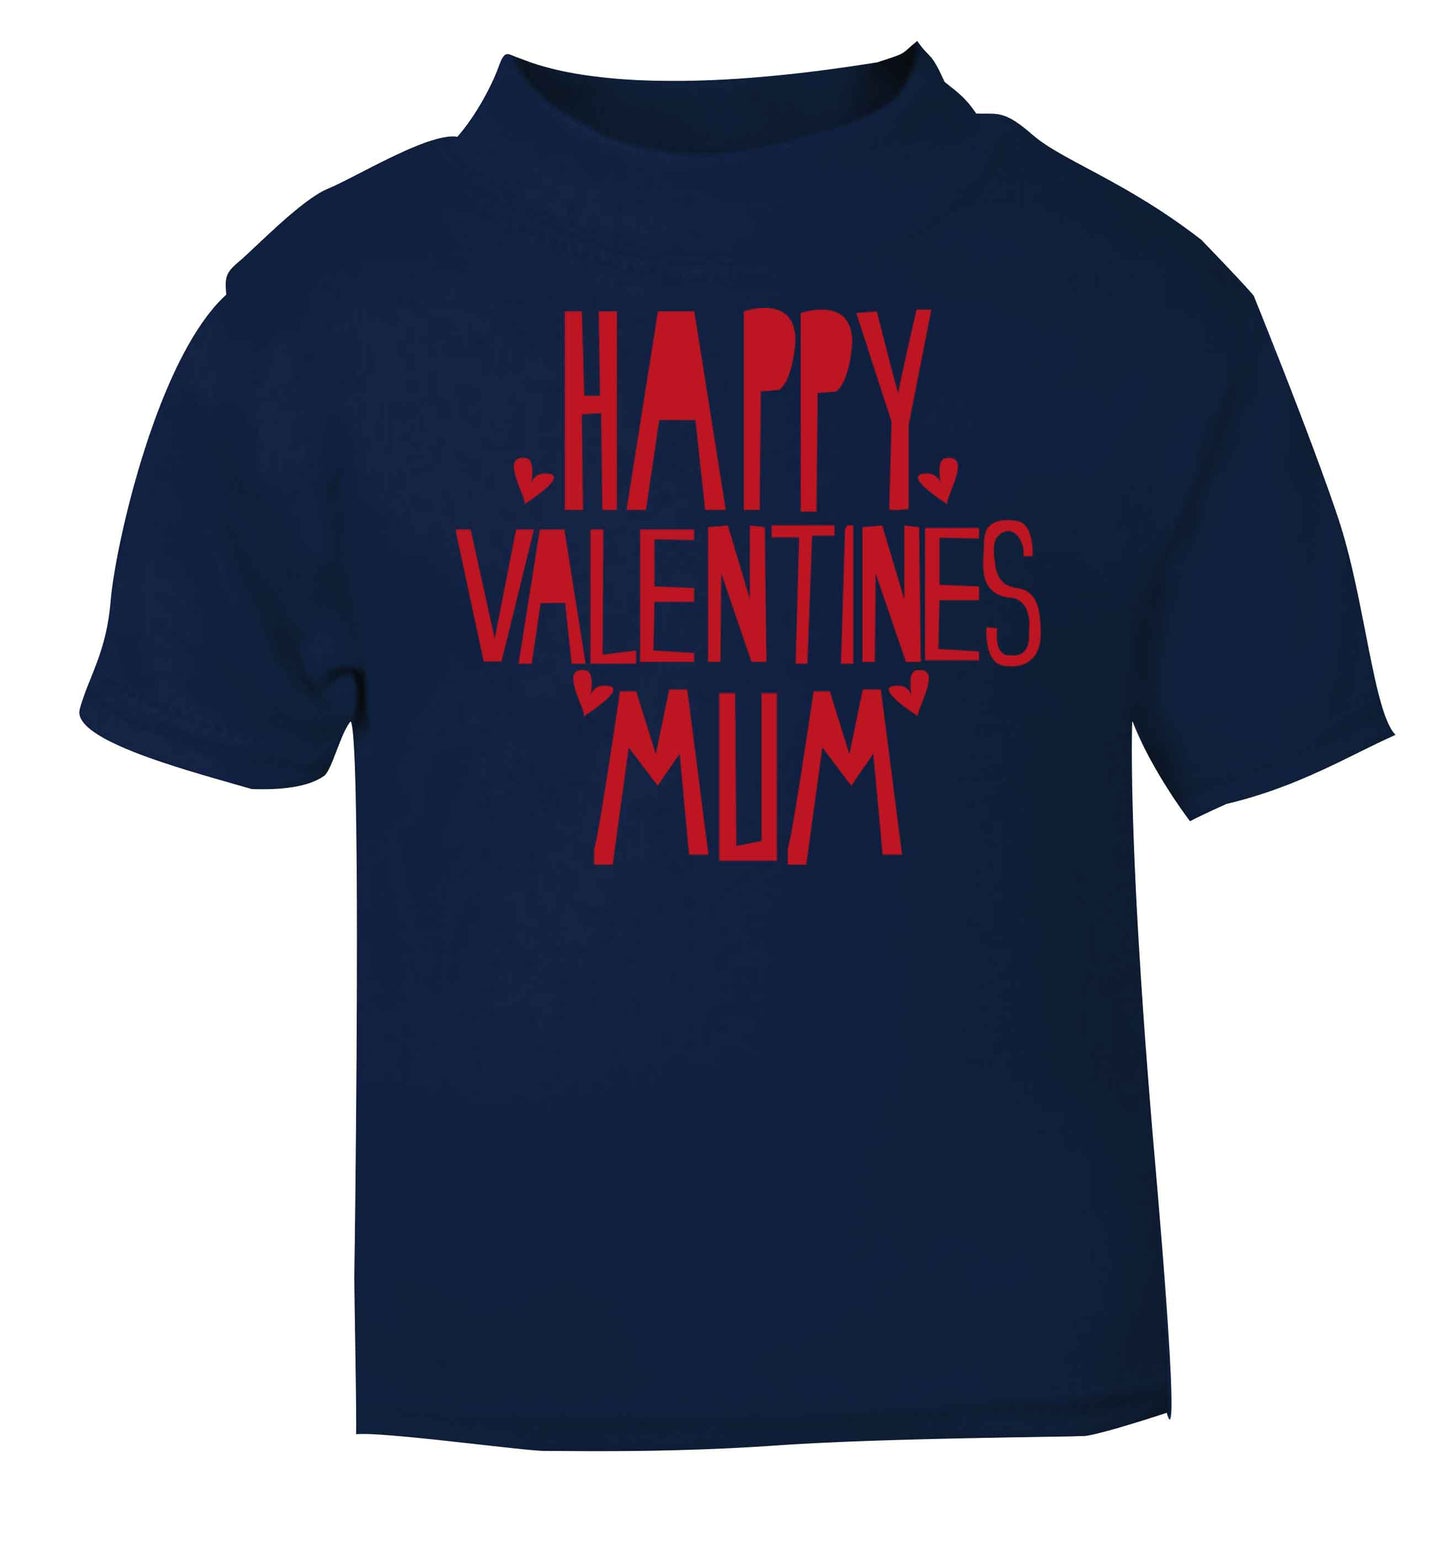 Happy valentines mum navy baby toddler Tshirt 2 Years